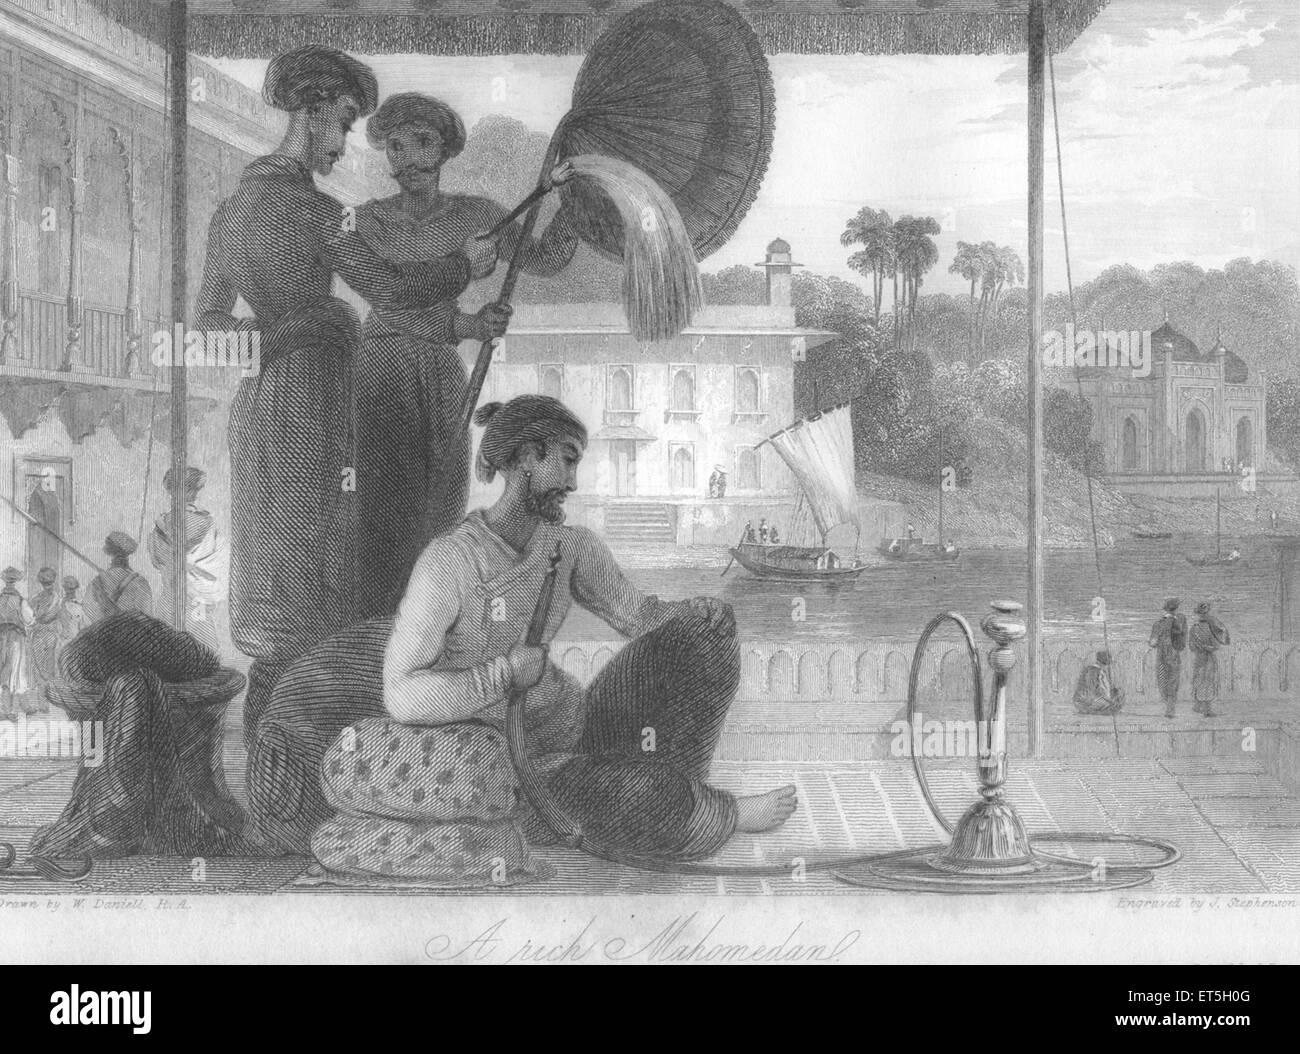 Muslim man smoking hookah, Indian men fanning him, India, Asia, Asian, Indian, old vintage 1800s steel engraving Stock Photo